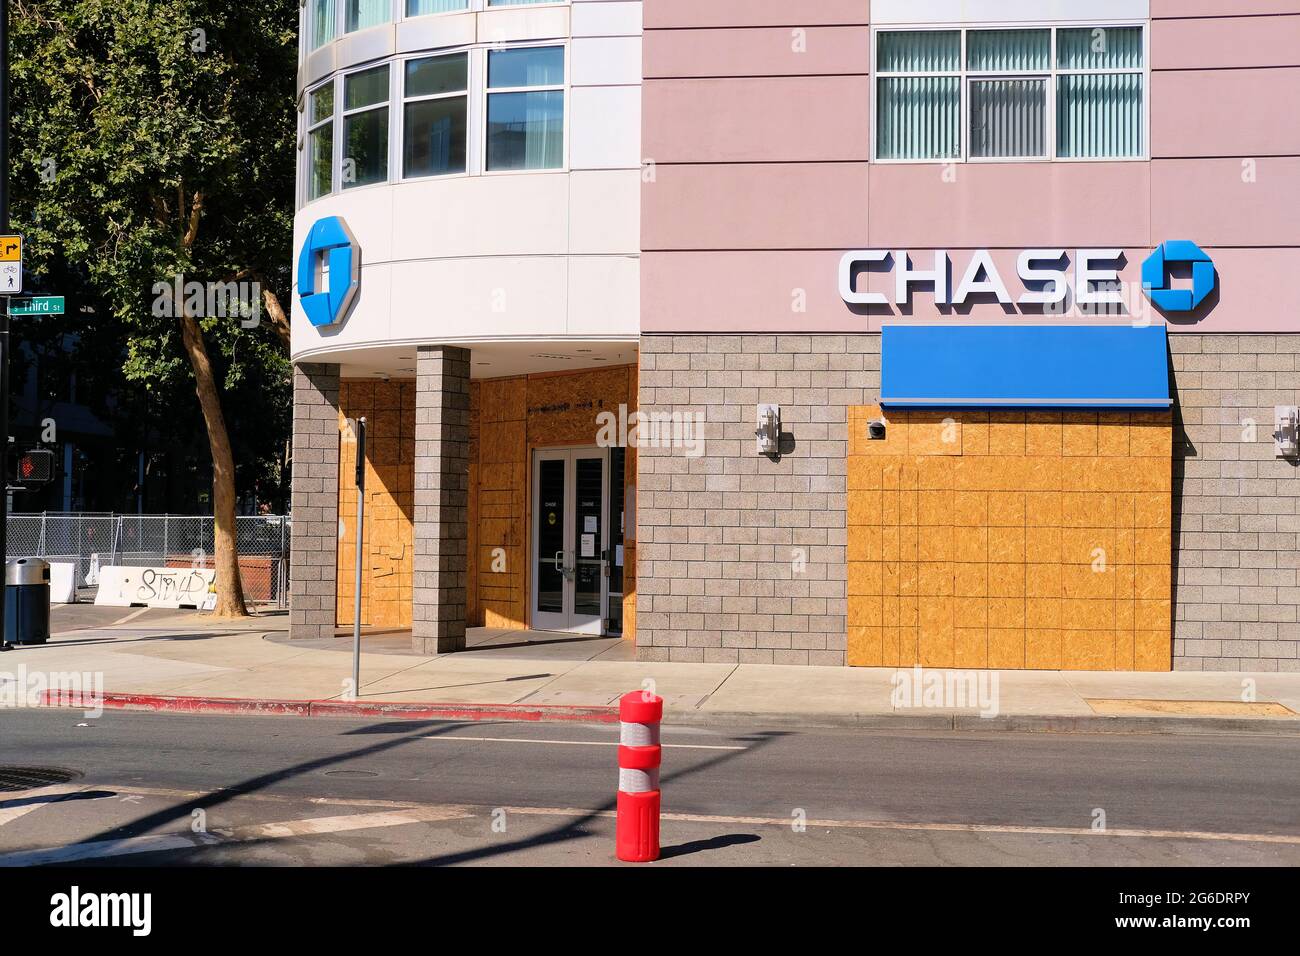 Außenansicht einer vernagelten und vorübergehend geschlossenen Chase Bank in der Innenstadt von San Jose, Kalifornien; Angst vor Demonstranten, Plünderungen und sozialen Unruhen. Stockfoto